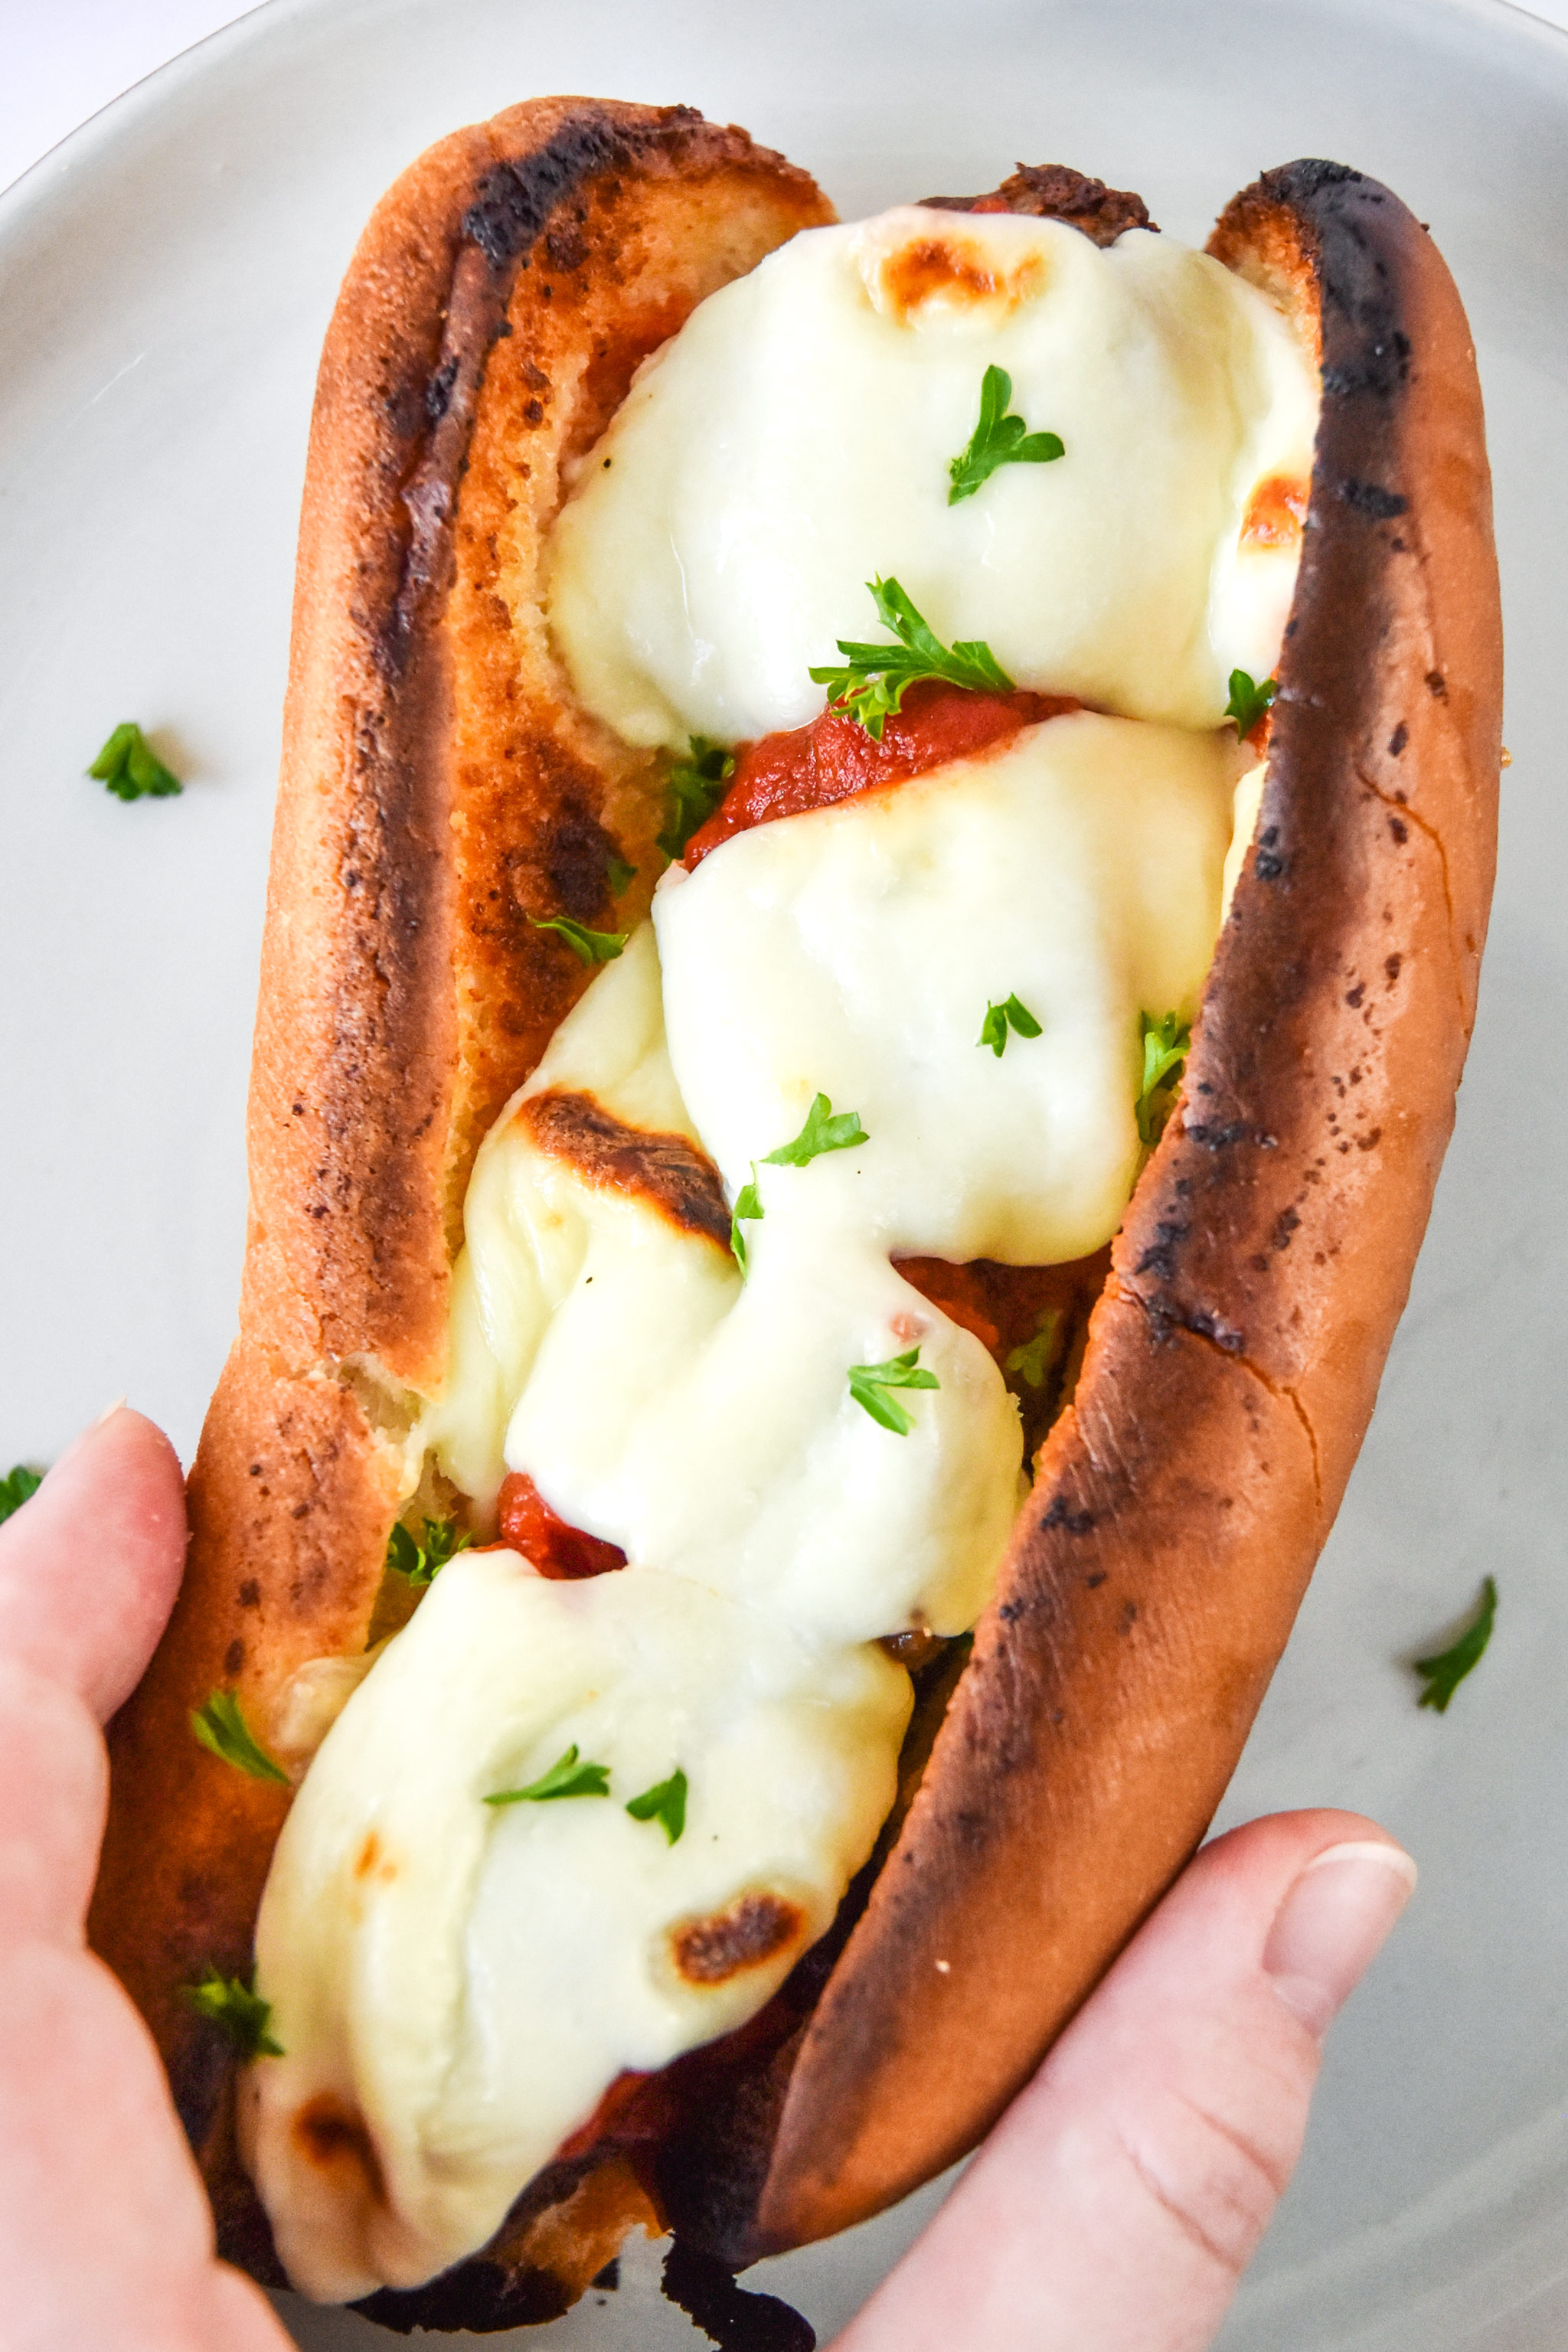 meatball sub sandwich with fresh mozzarella in hand.